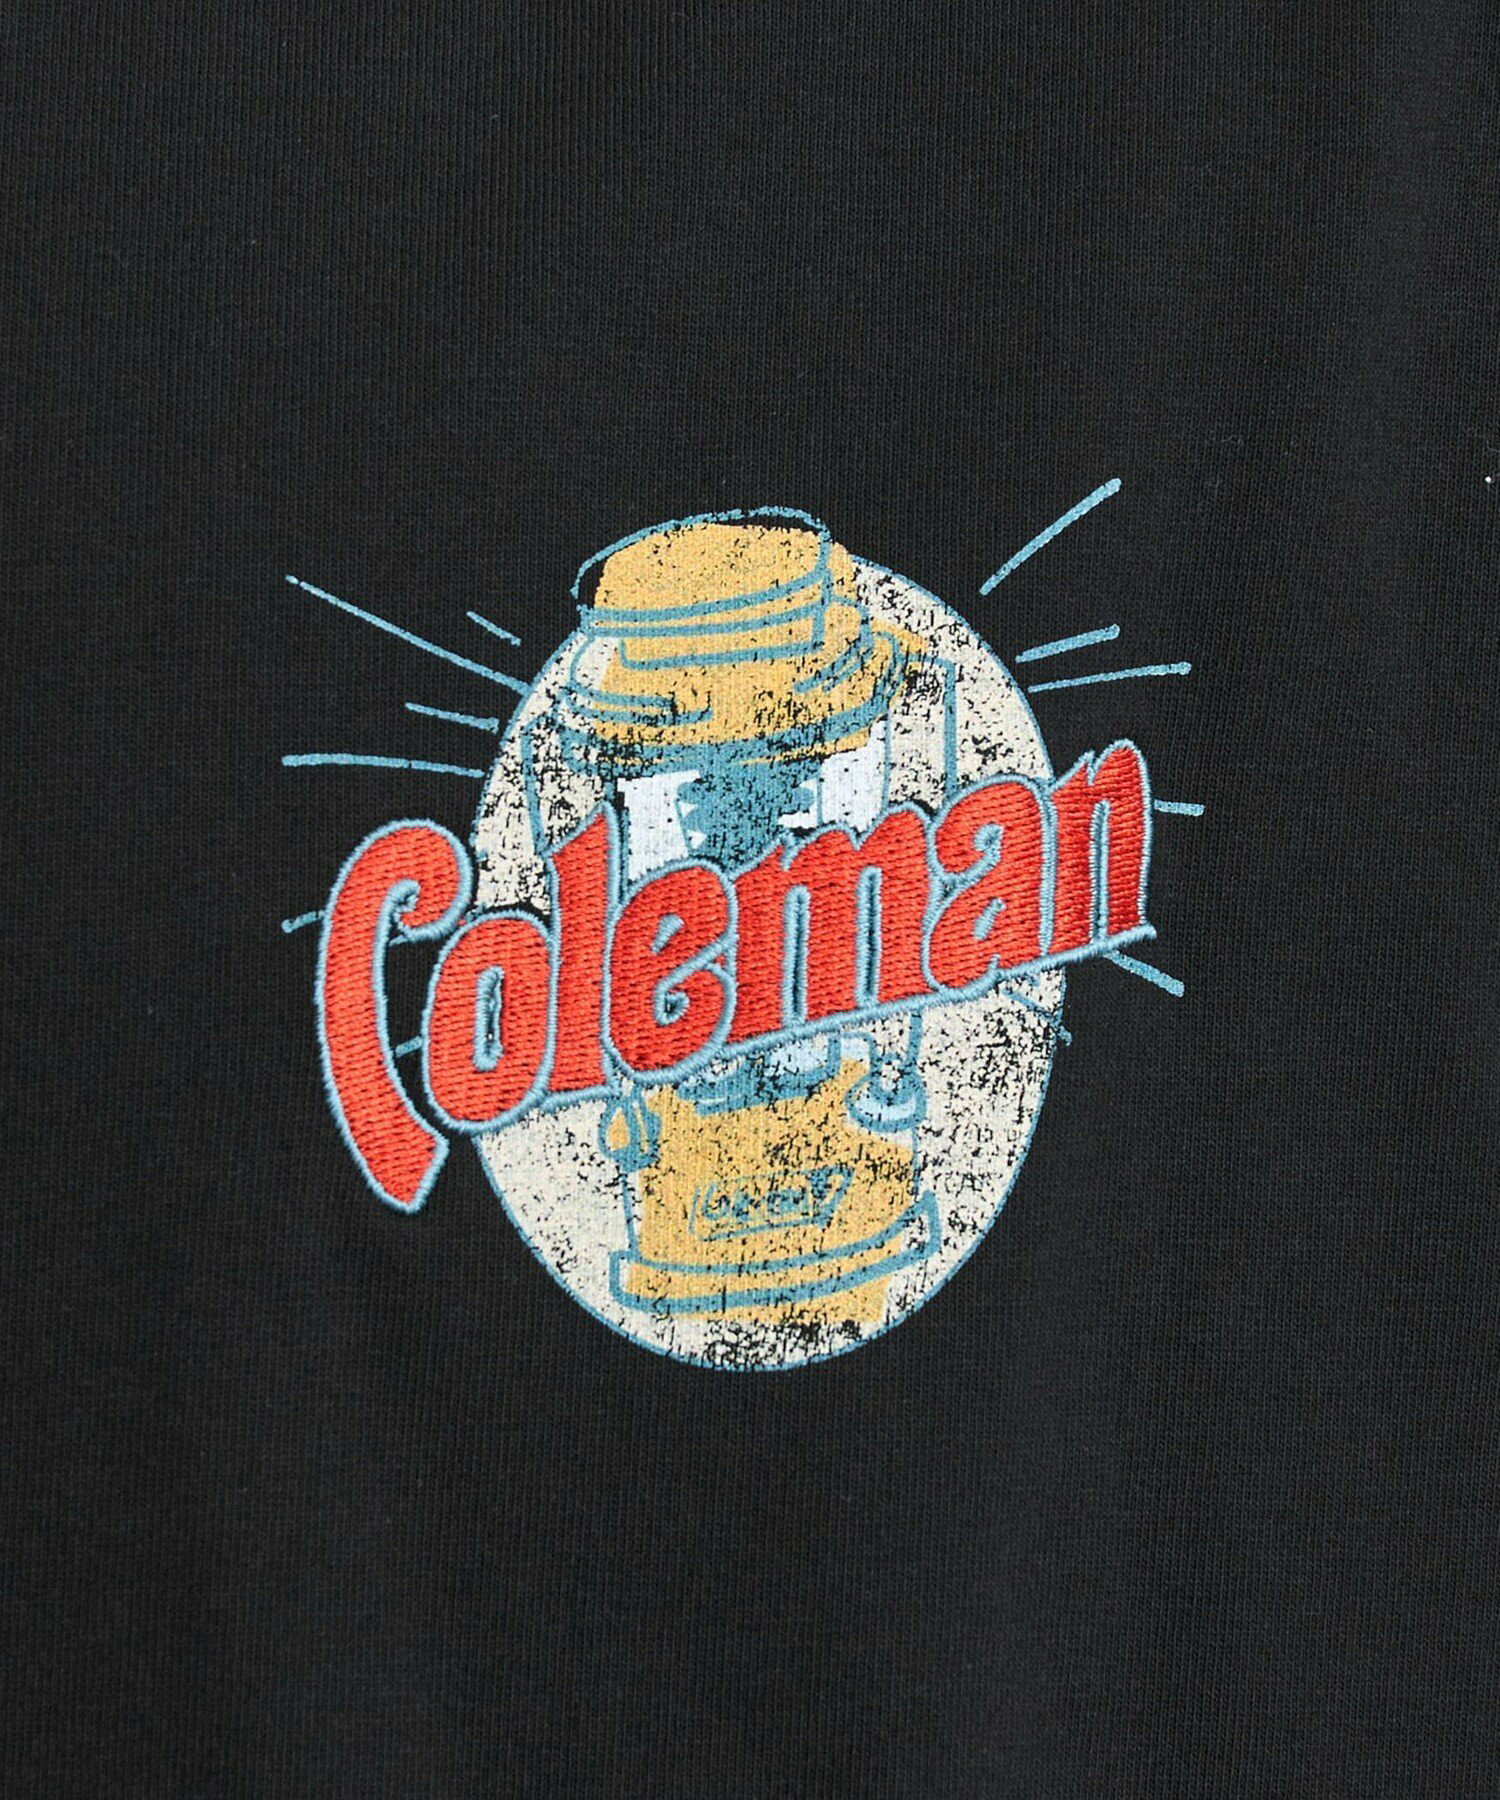 Coleman(コールマン)別注グラフィックTシャツ(WEB限定カラー)